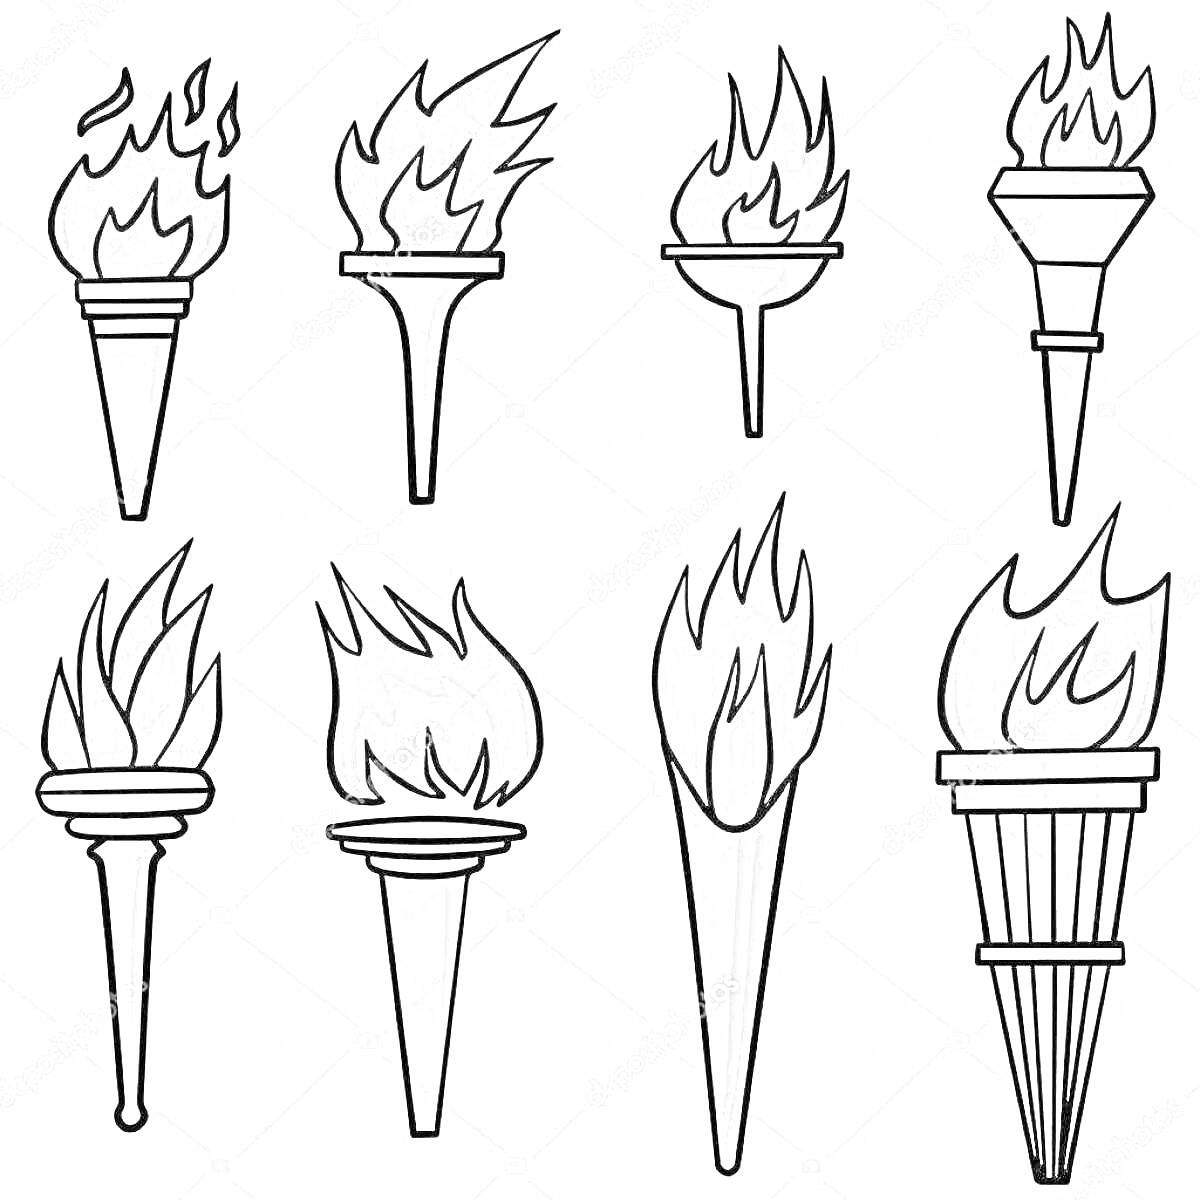 Раскраска Восемь факелов с различной формой огня и ручек для раскраски